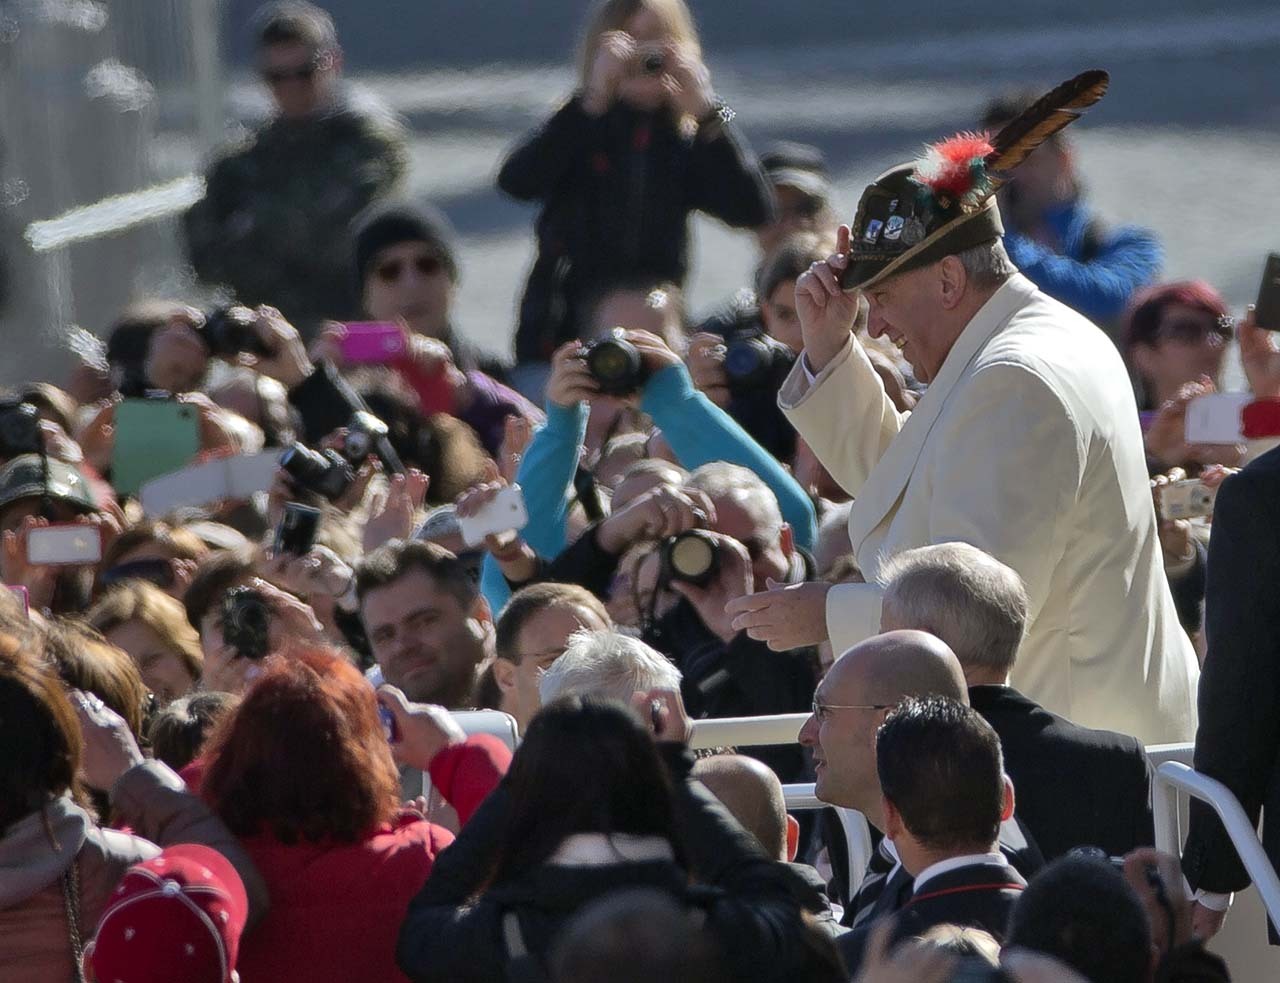 El Papa Francisco, candidato al Nobel de la Paz. El argentino Bergoglio integra una lista de 278 nombres elegidos para disputarse el premio. (AP)